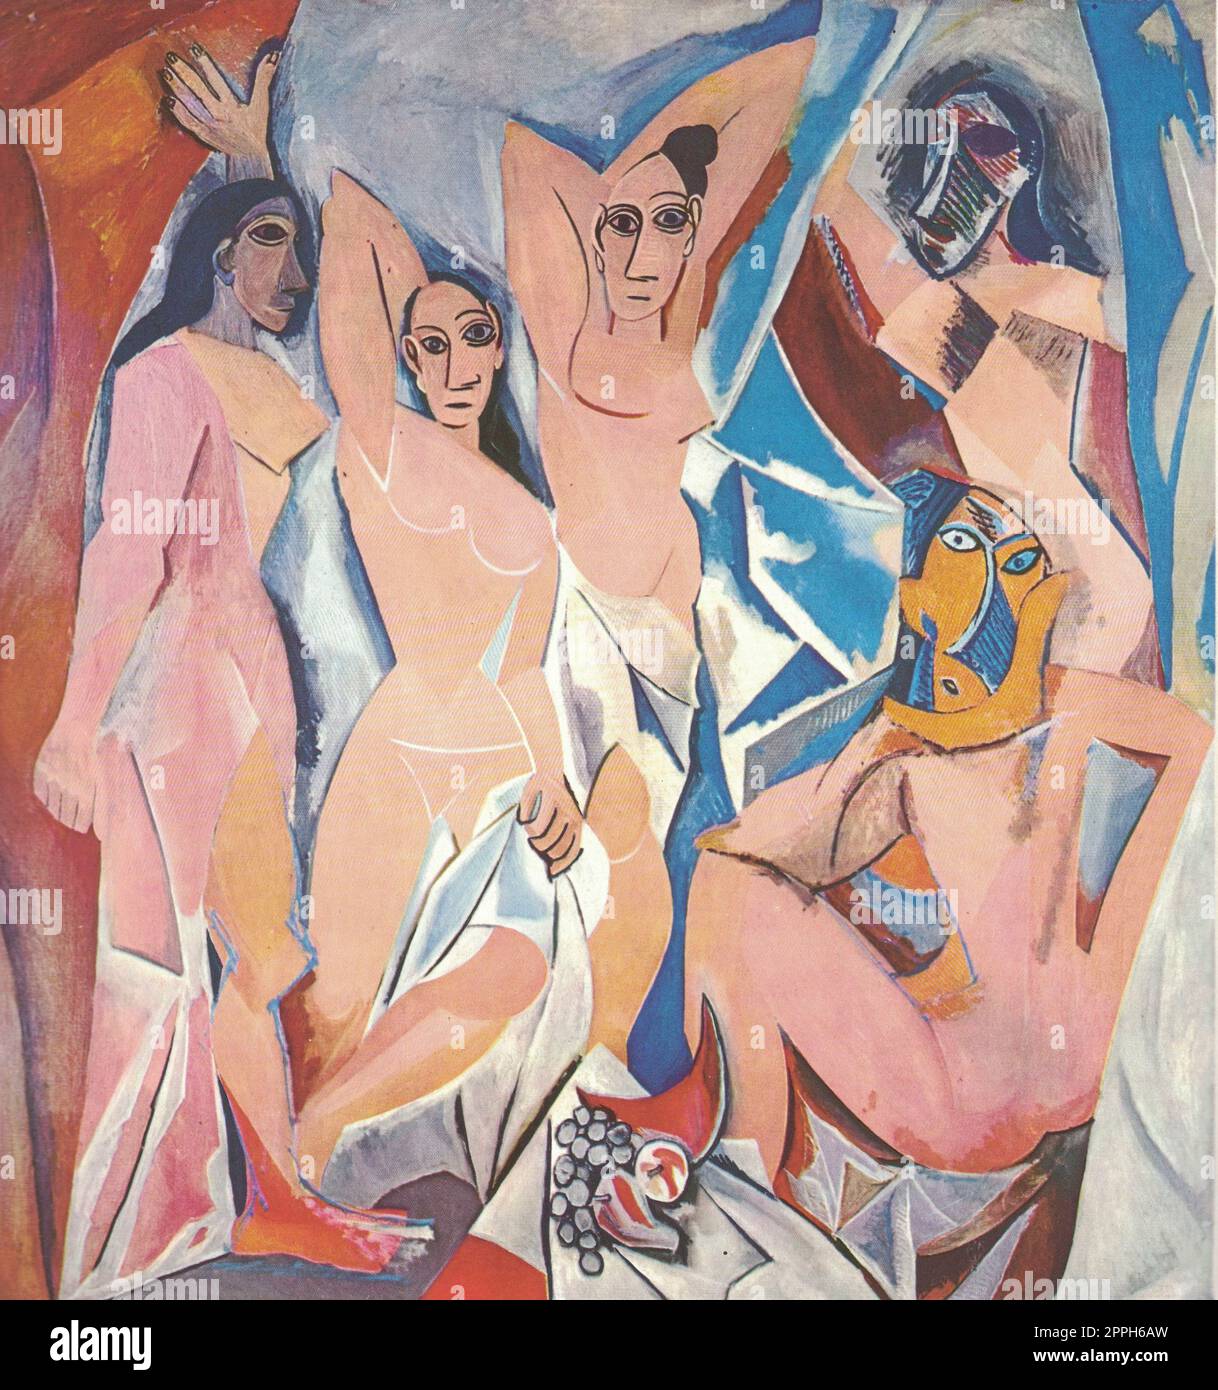 Les jeunes dames d'Avignon, 1907. Peinture à l'huile de Pablo Picasso. Pablo Ruiz Picasso, 25 octobre 1881 - 8 avril 1973, était un peintre, sculpteur, graveur, céramiste et designer de théâtre espagnol qui a passé la majeure partie de sa vie adulte en France. Considéré comme un Banque D'Images